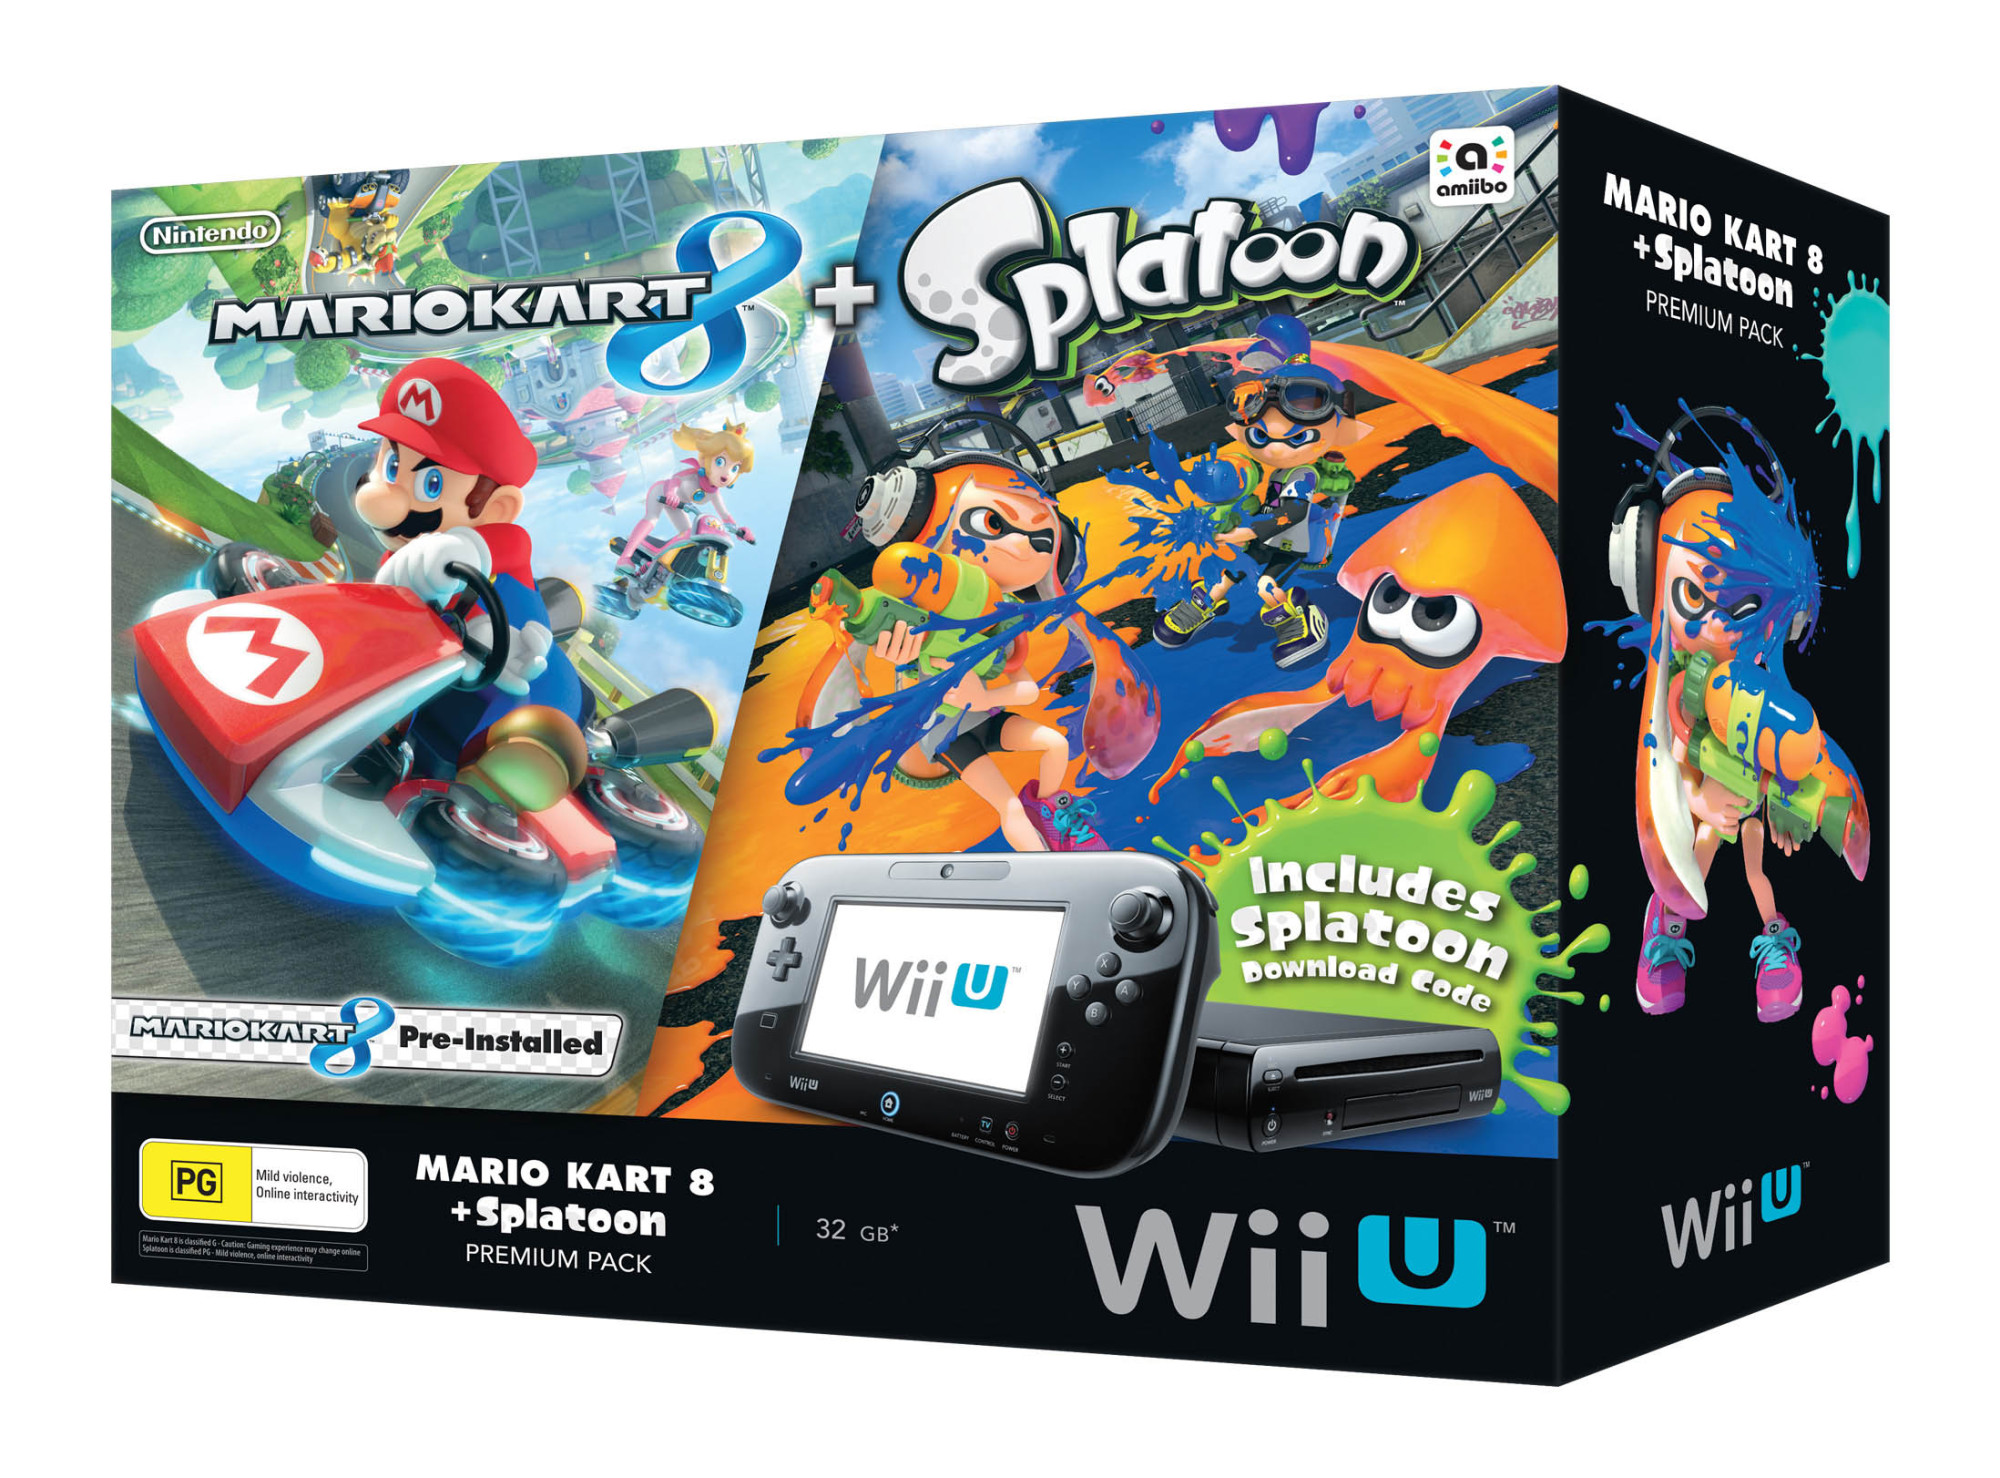 Mario Kart 8 Splatoon Wii U Premium Pack Vooks 0078